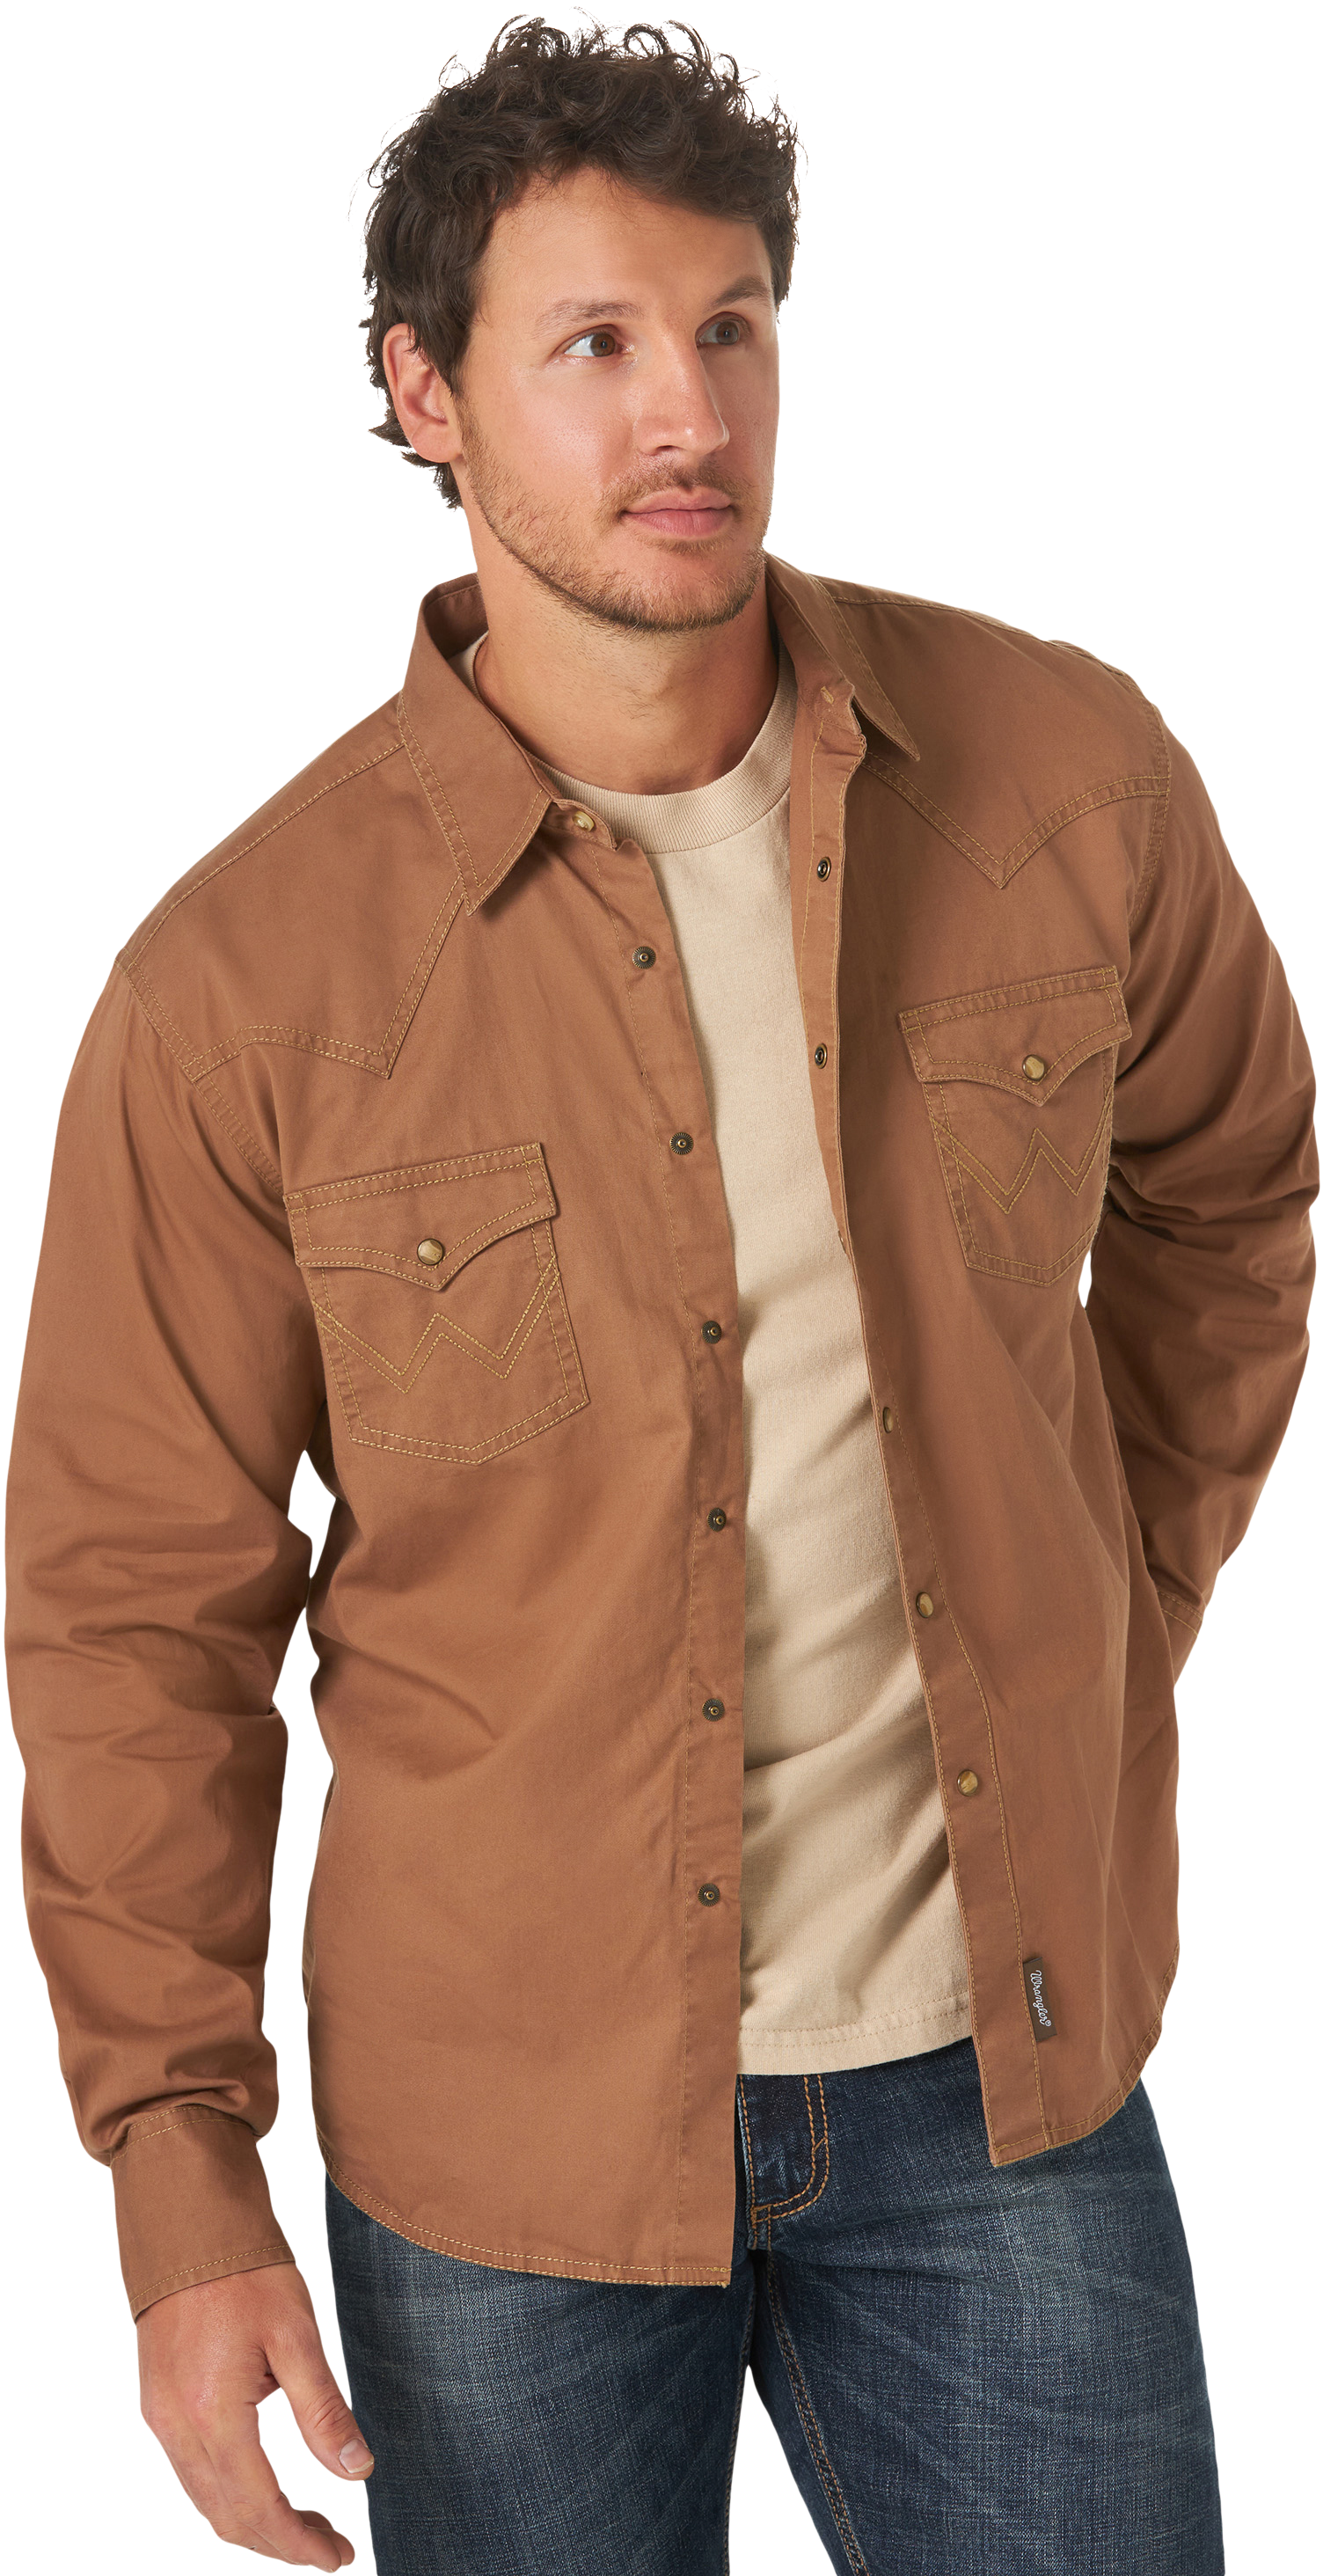 Wrangler Retro Western Long-Sleeve Shirt for Men